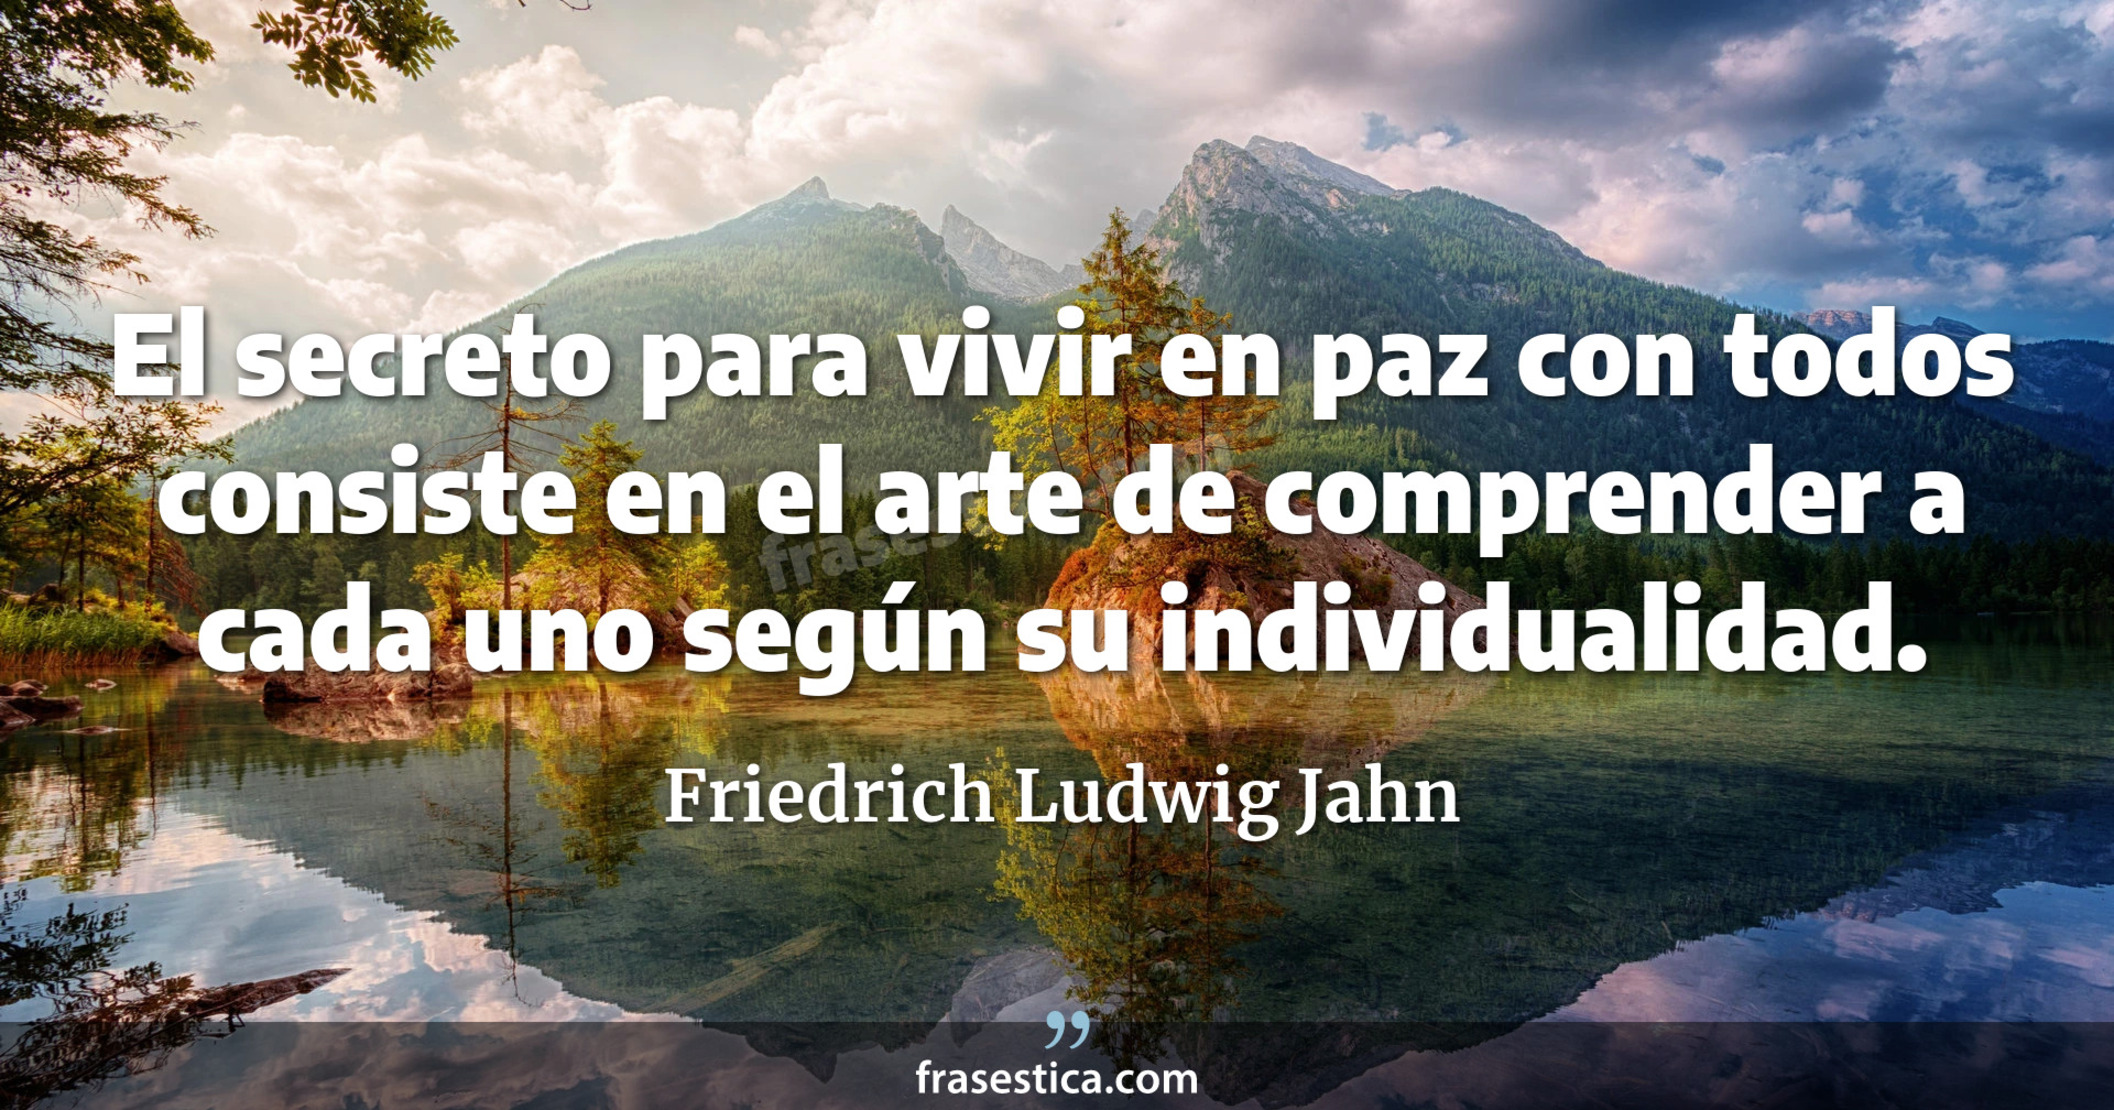 El secreto para vivir en paz con todos consiste en el arte de comprender a cada uno según su individualidad. - Friedrich Ludwig Jahn